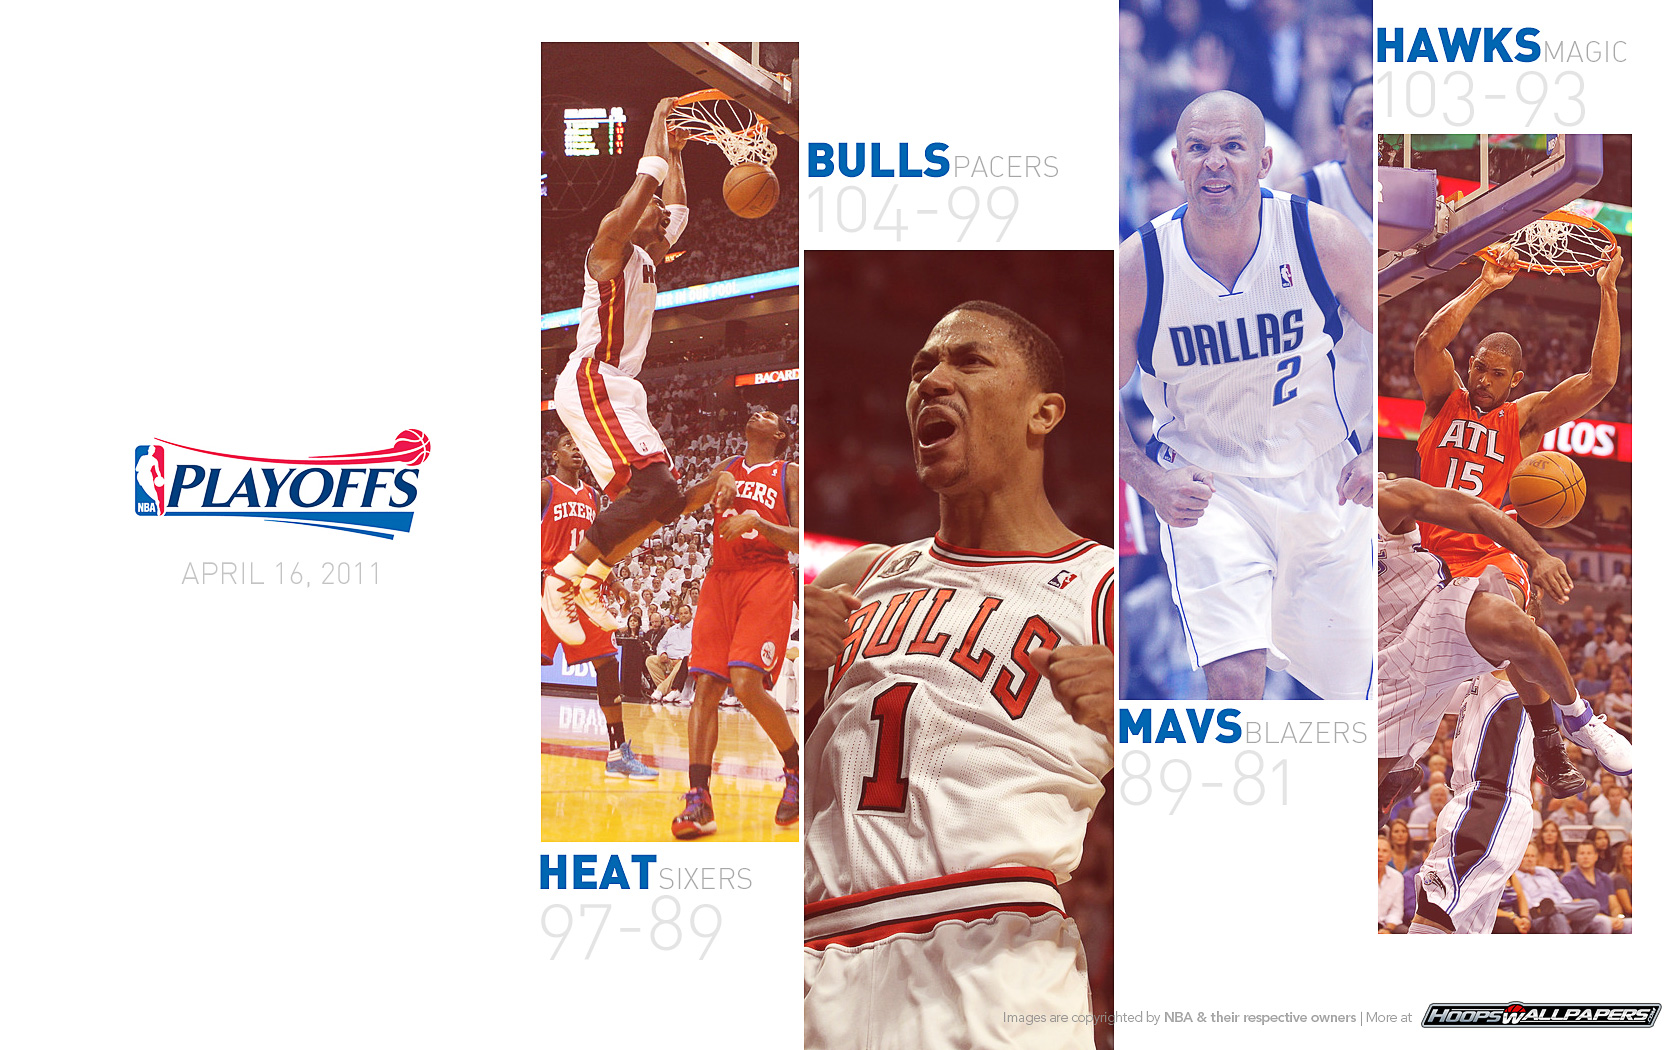 Download Chris Bosh NBA Basketball Hall Of Fame Wallpaper